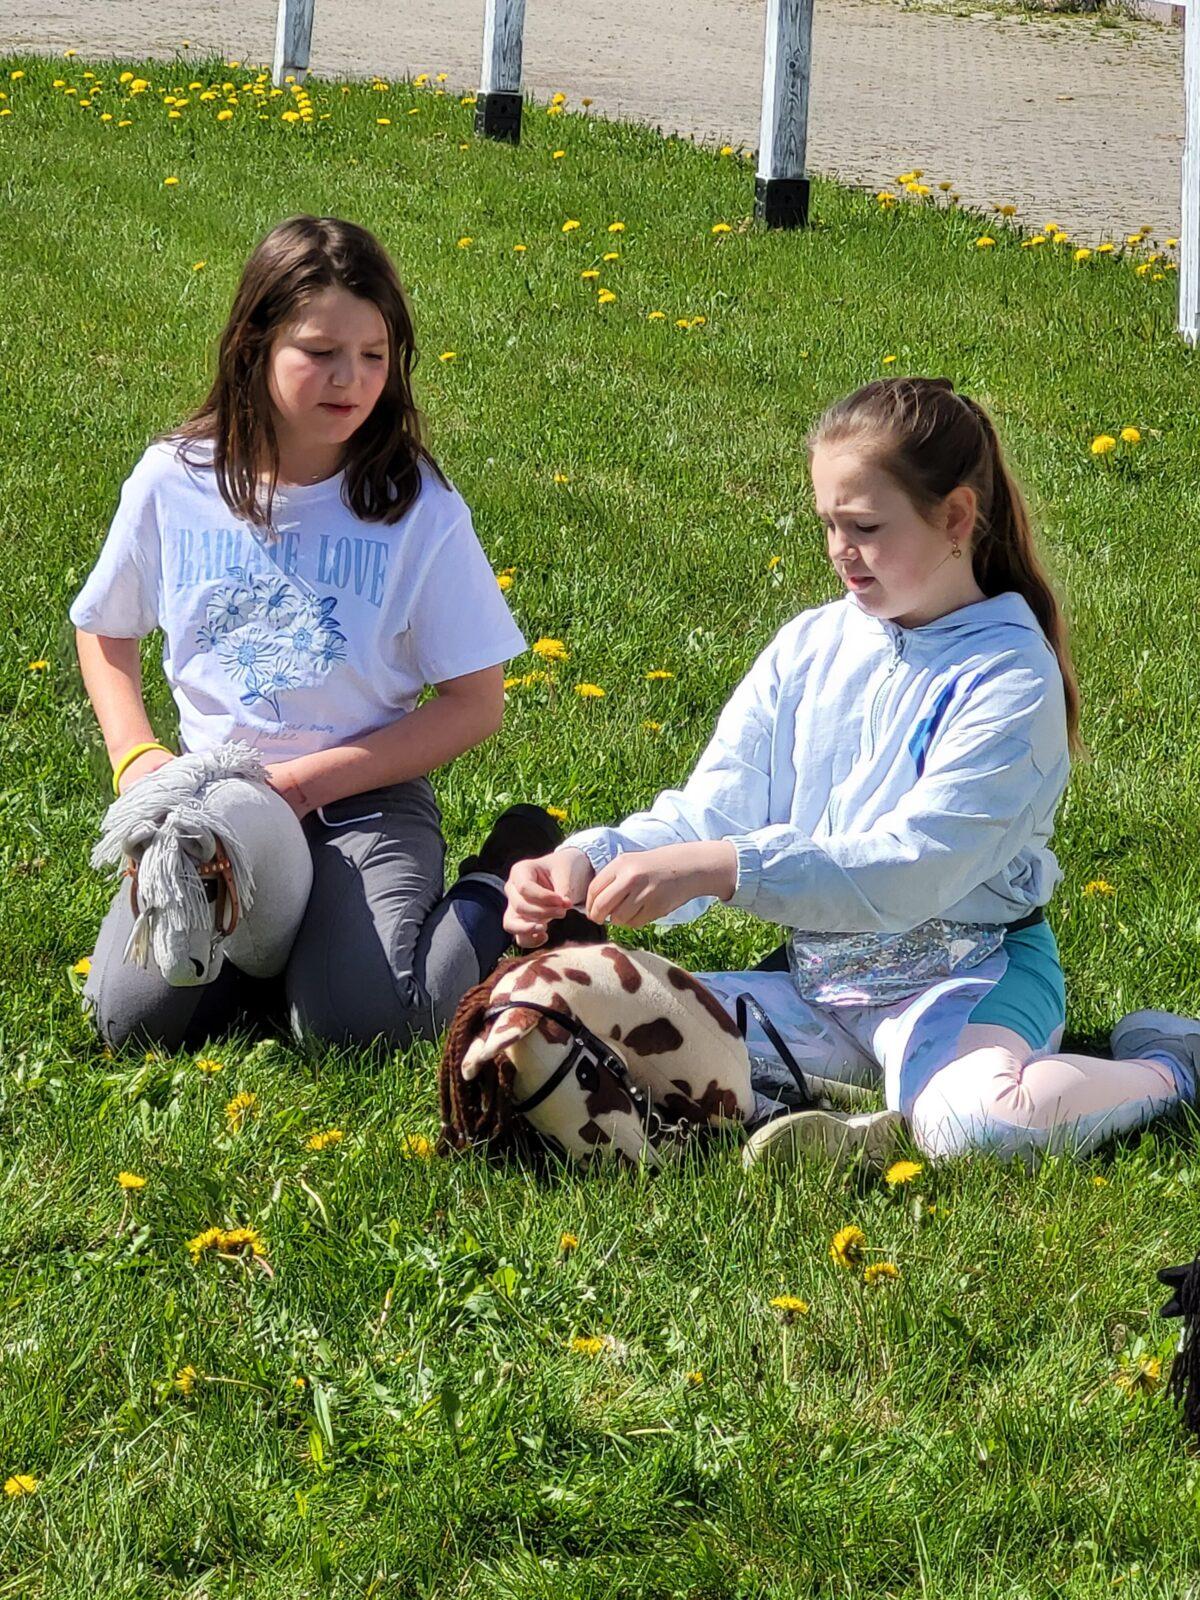 dziewczynki siedzą na trawie i bawią się swoimi hobby horse